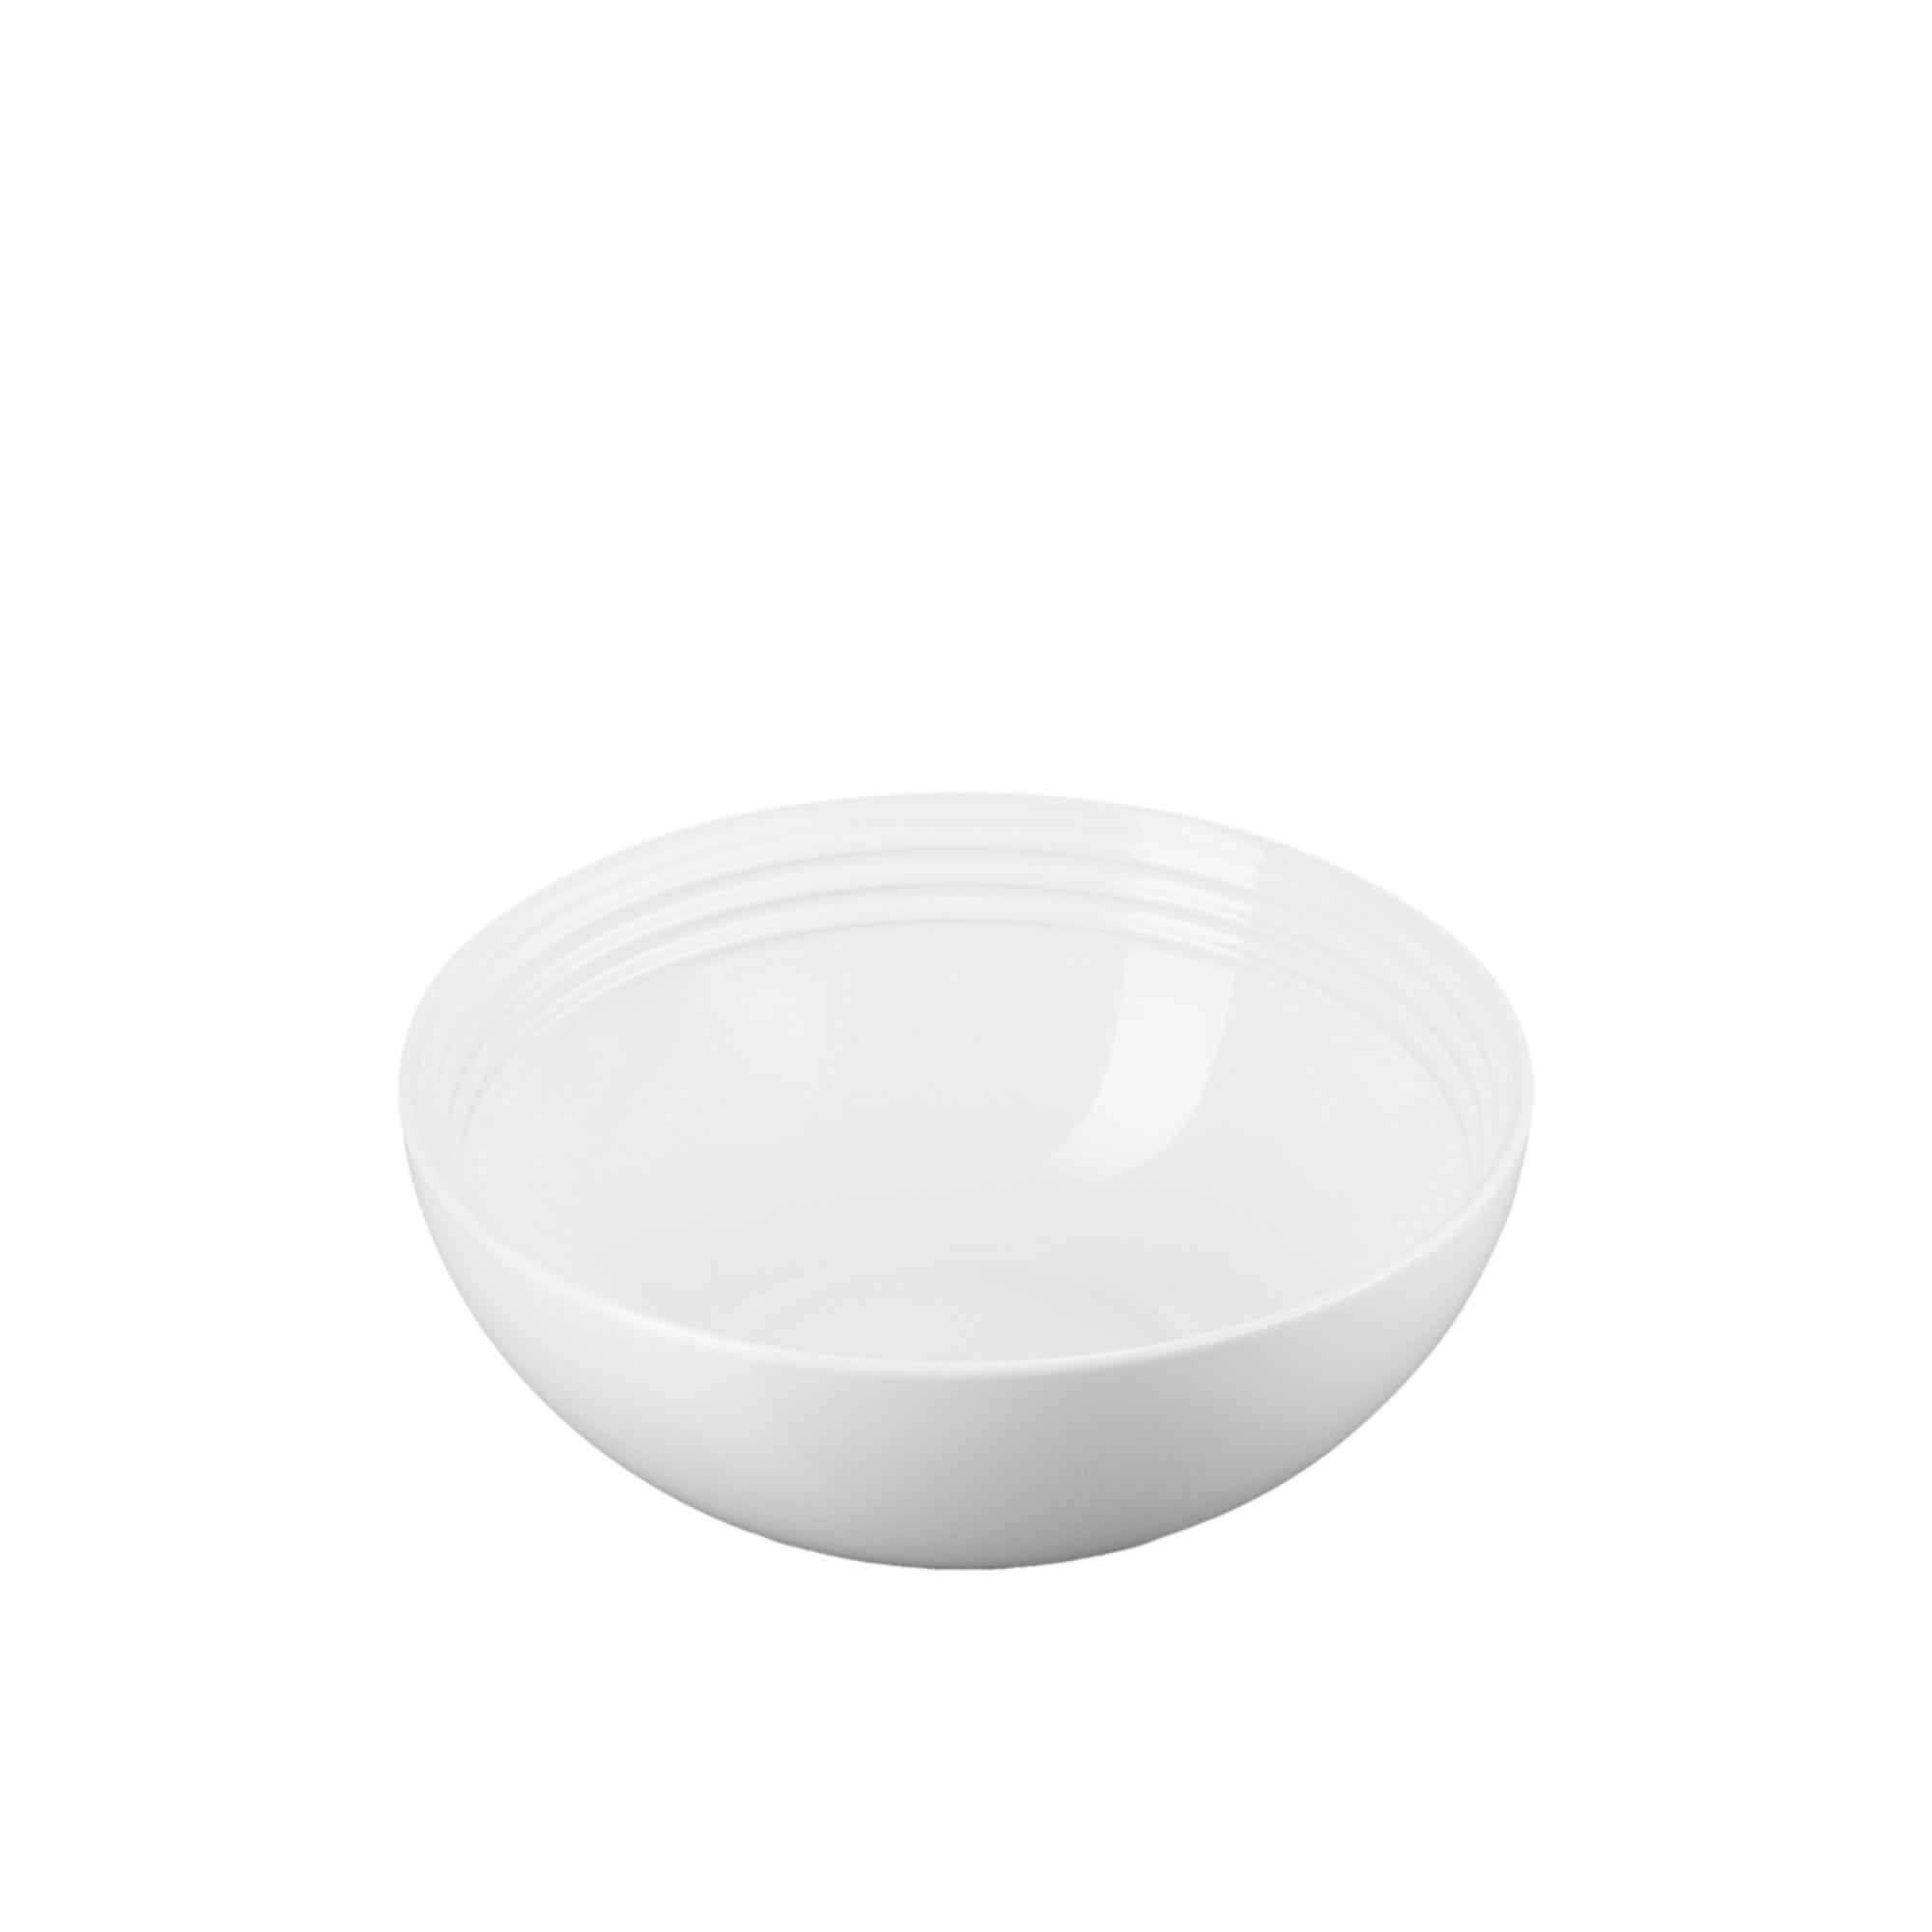 Le Creuset Stoneware Serving Bowl 24cm White Image 2